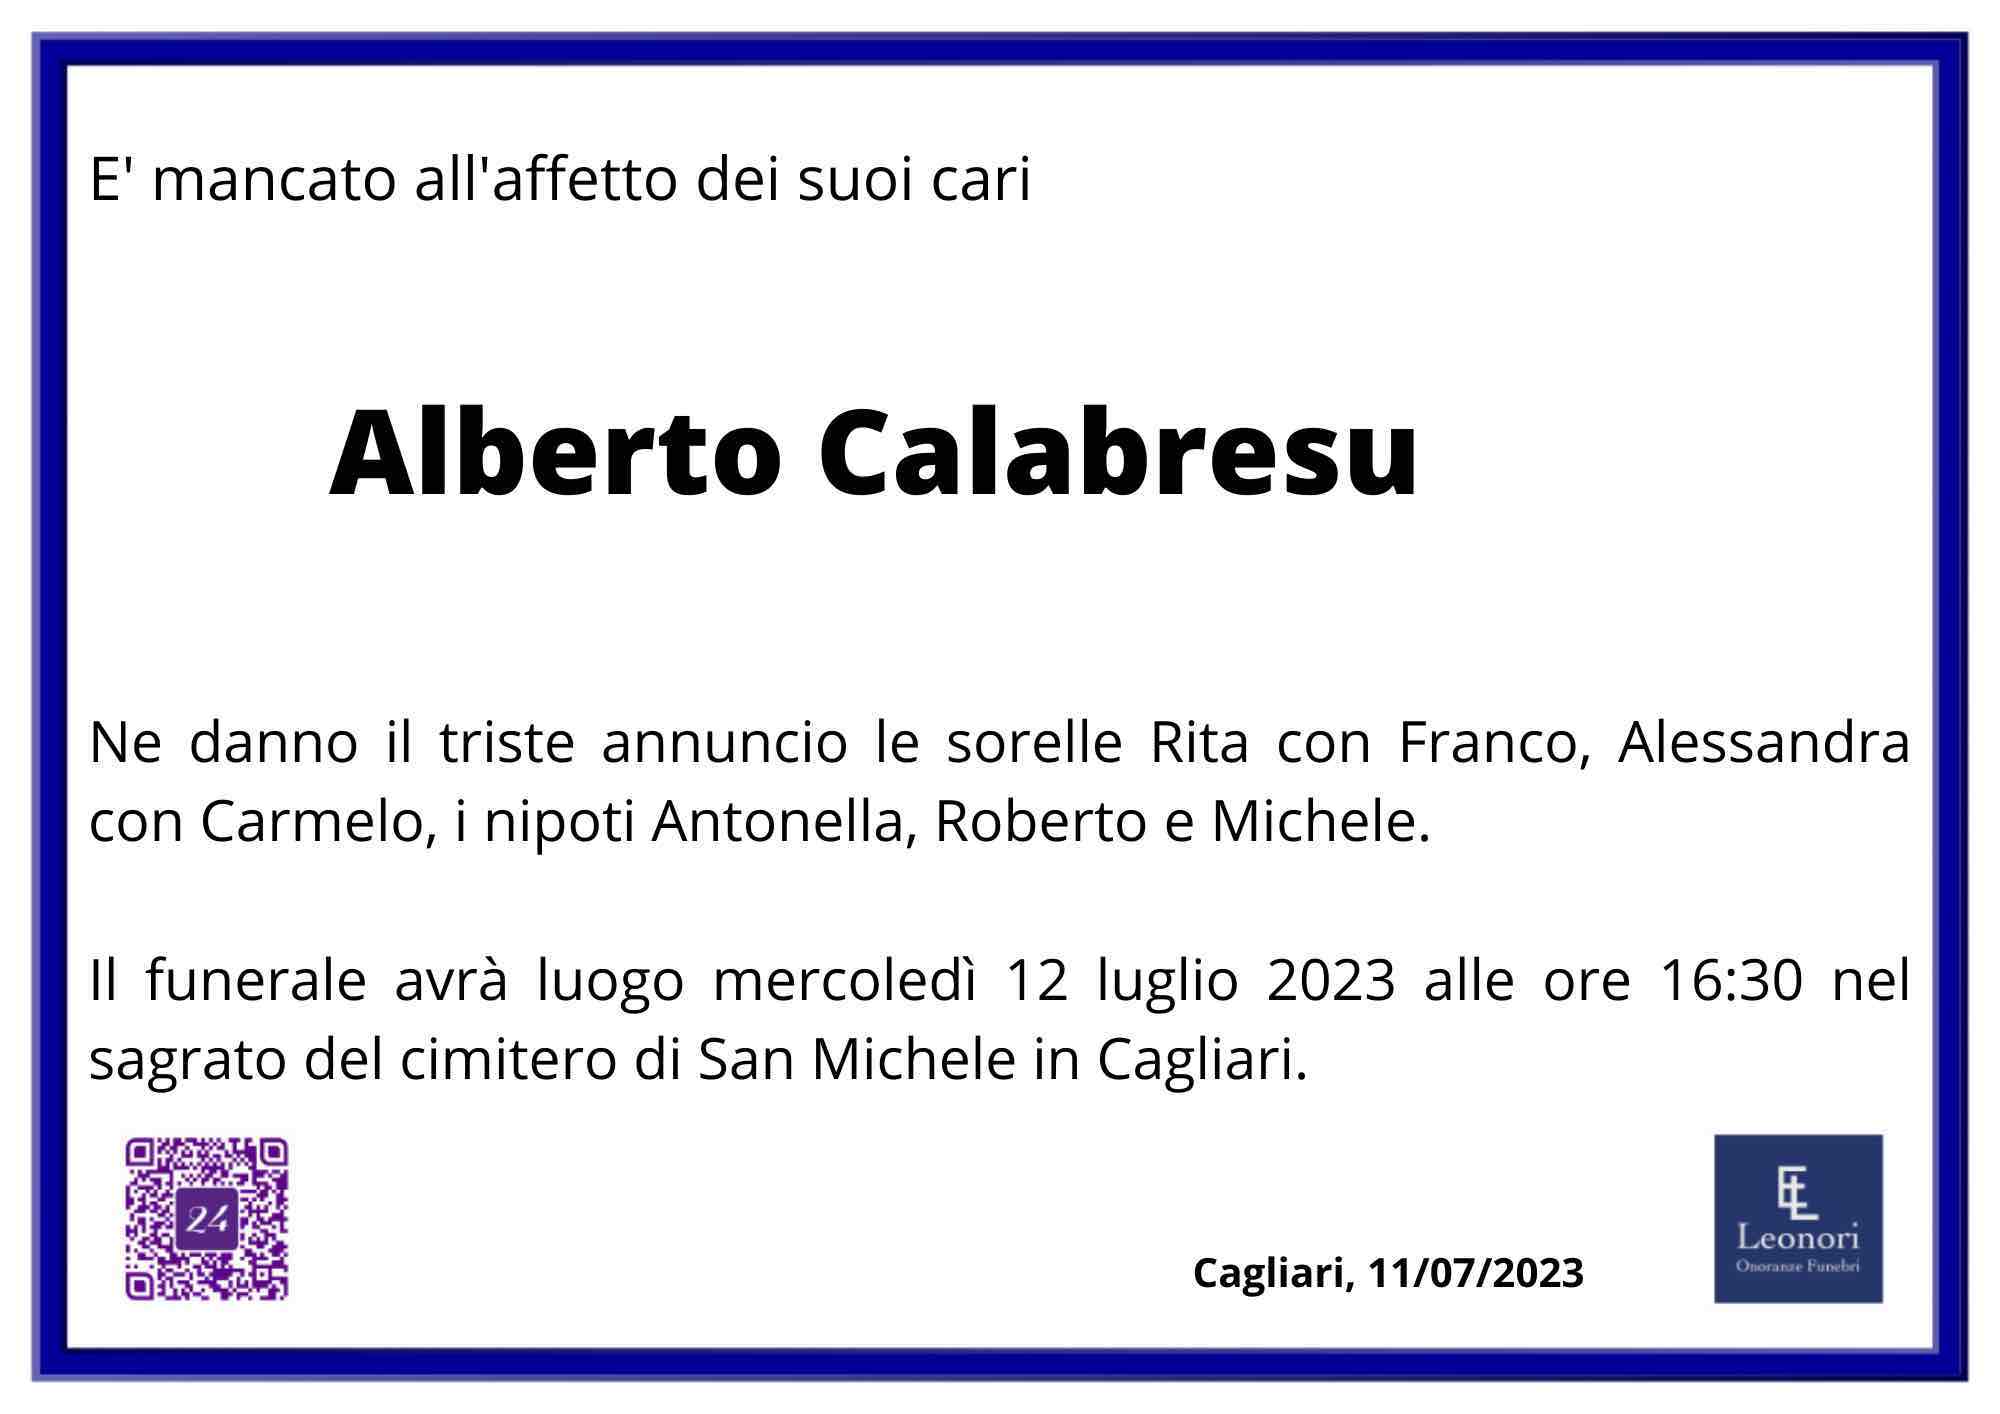 Alberto Calabresu